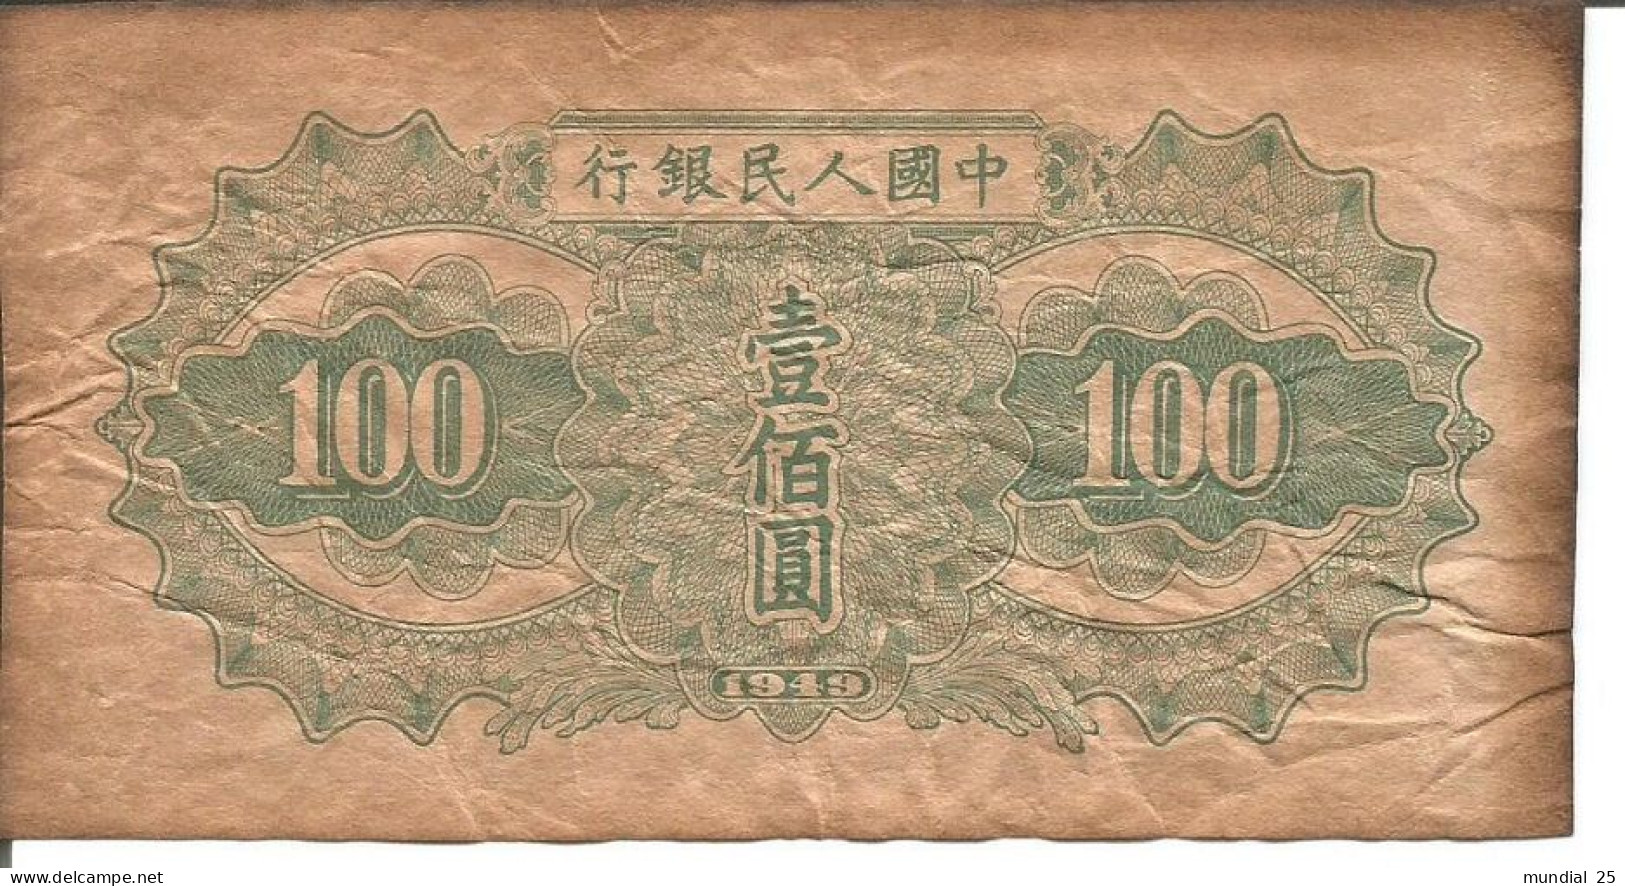 CHINA 100 YUAN 1949 - REPRINT NOTE - Cina